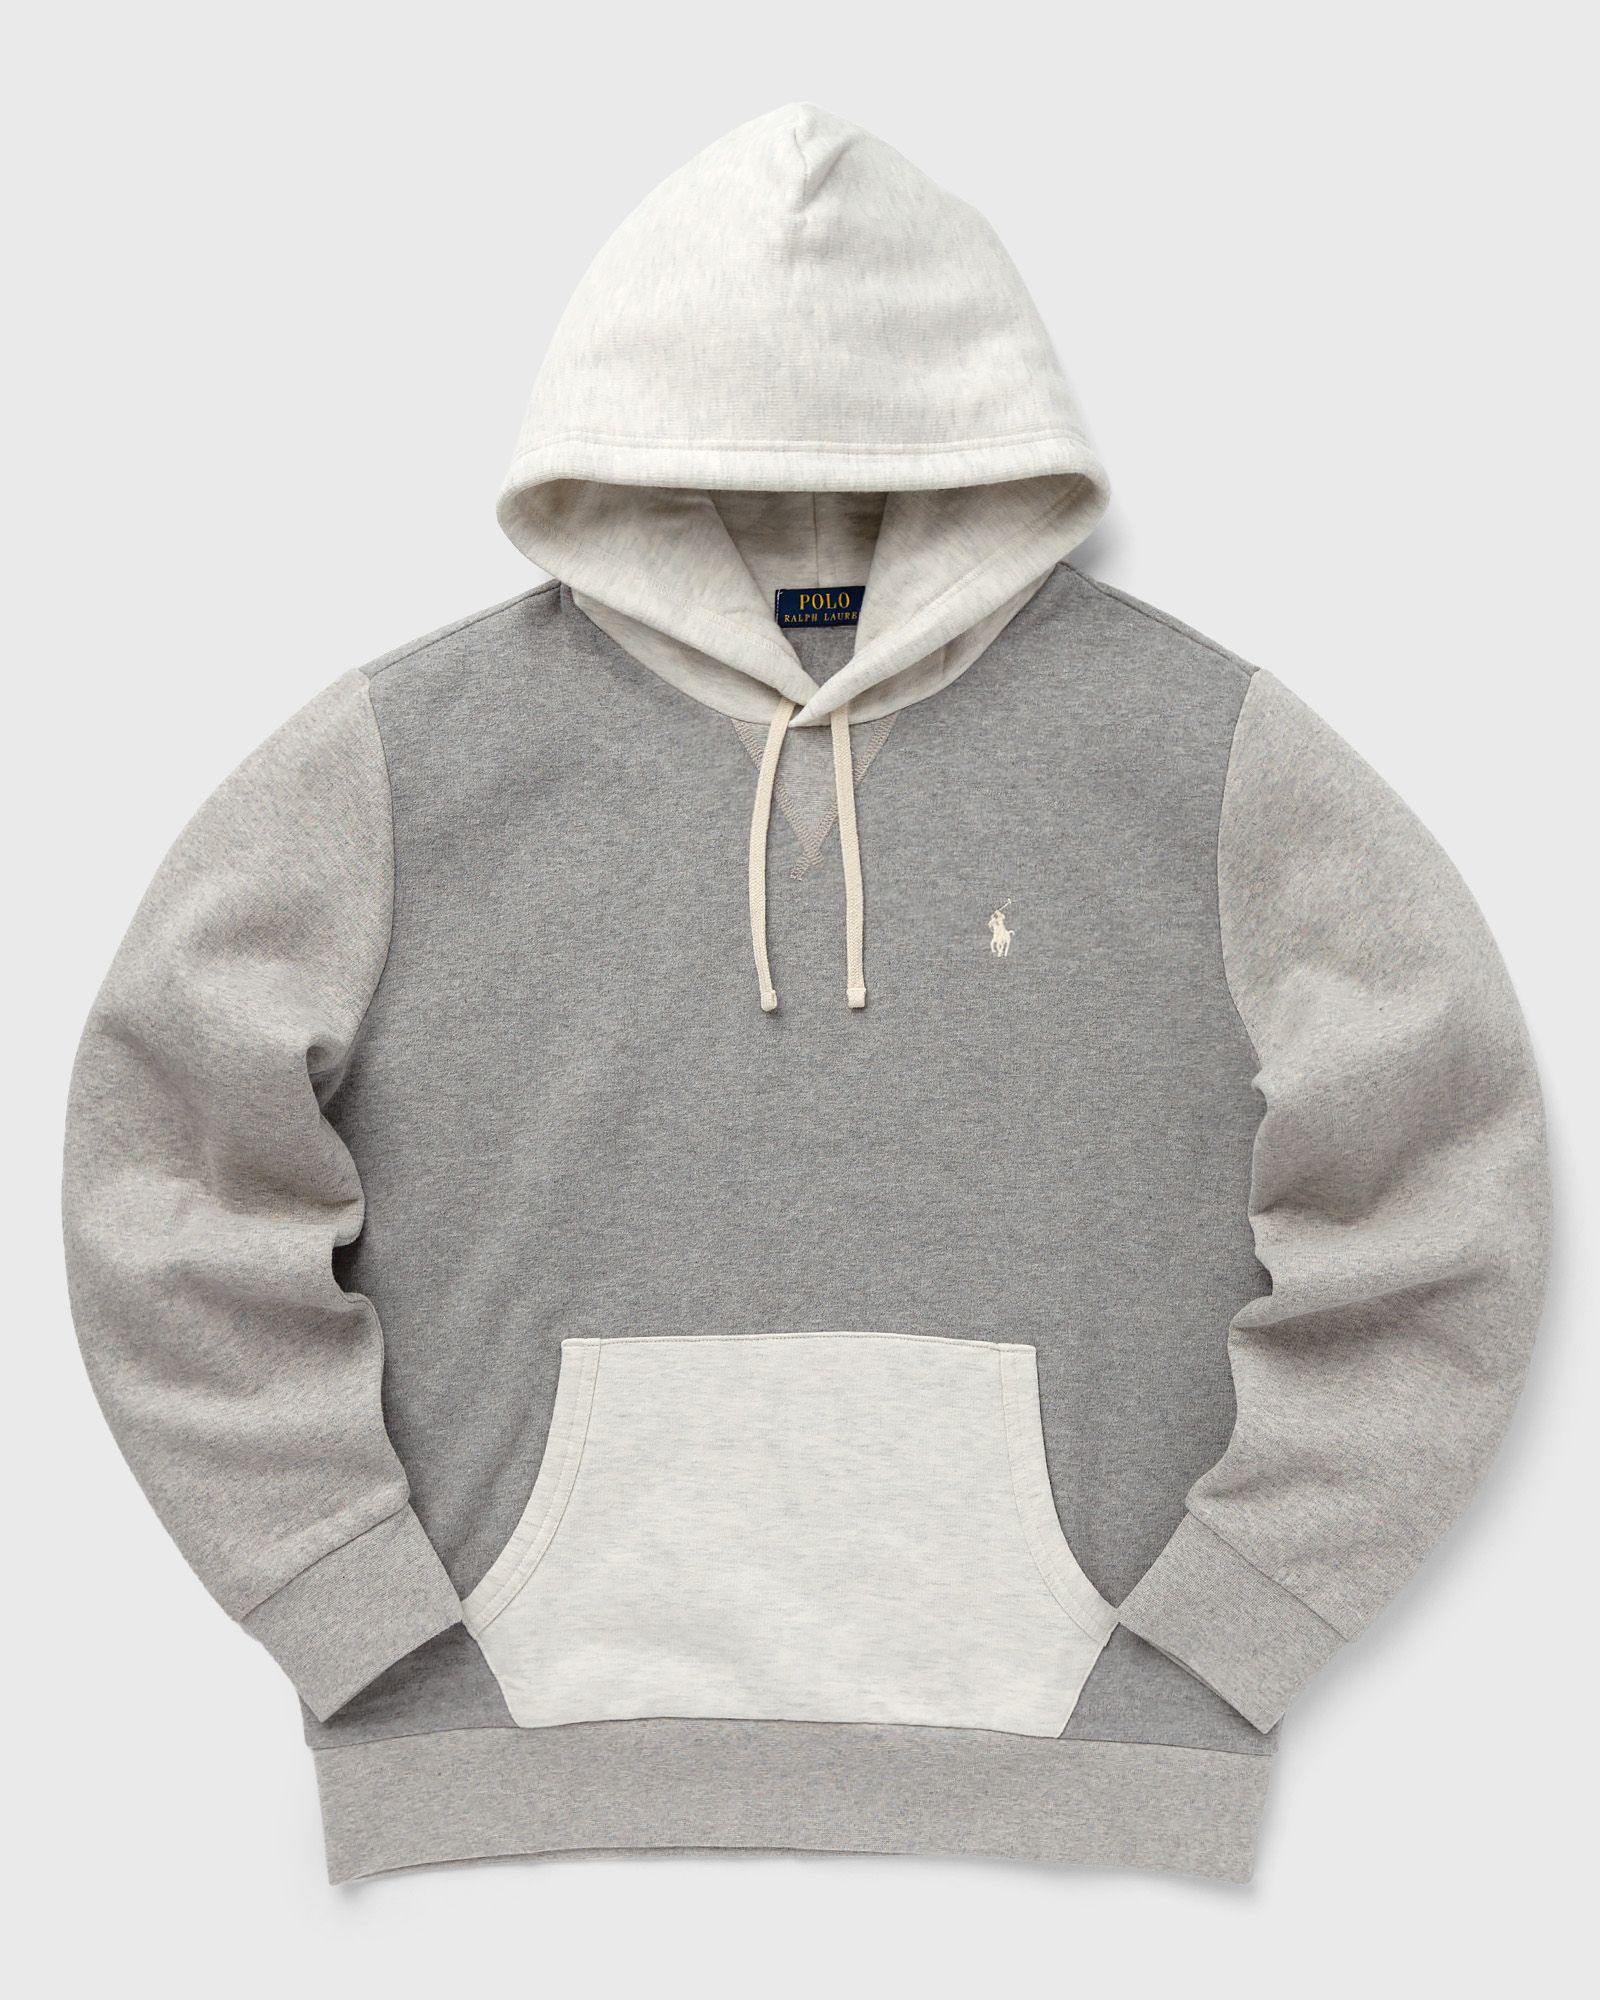 Polo Ralph Lauren - l/s hoody men hoodies grey in größe:s